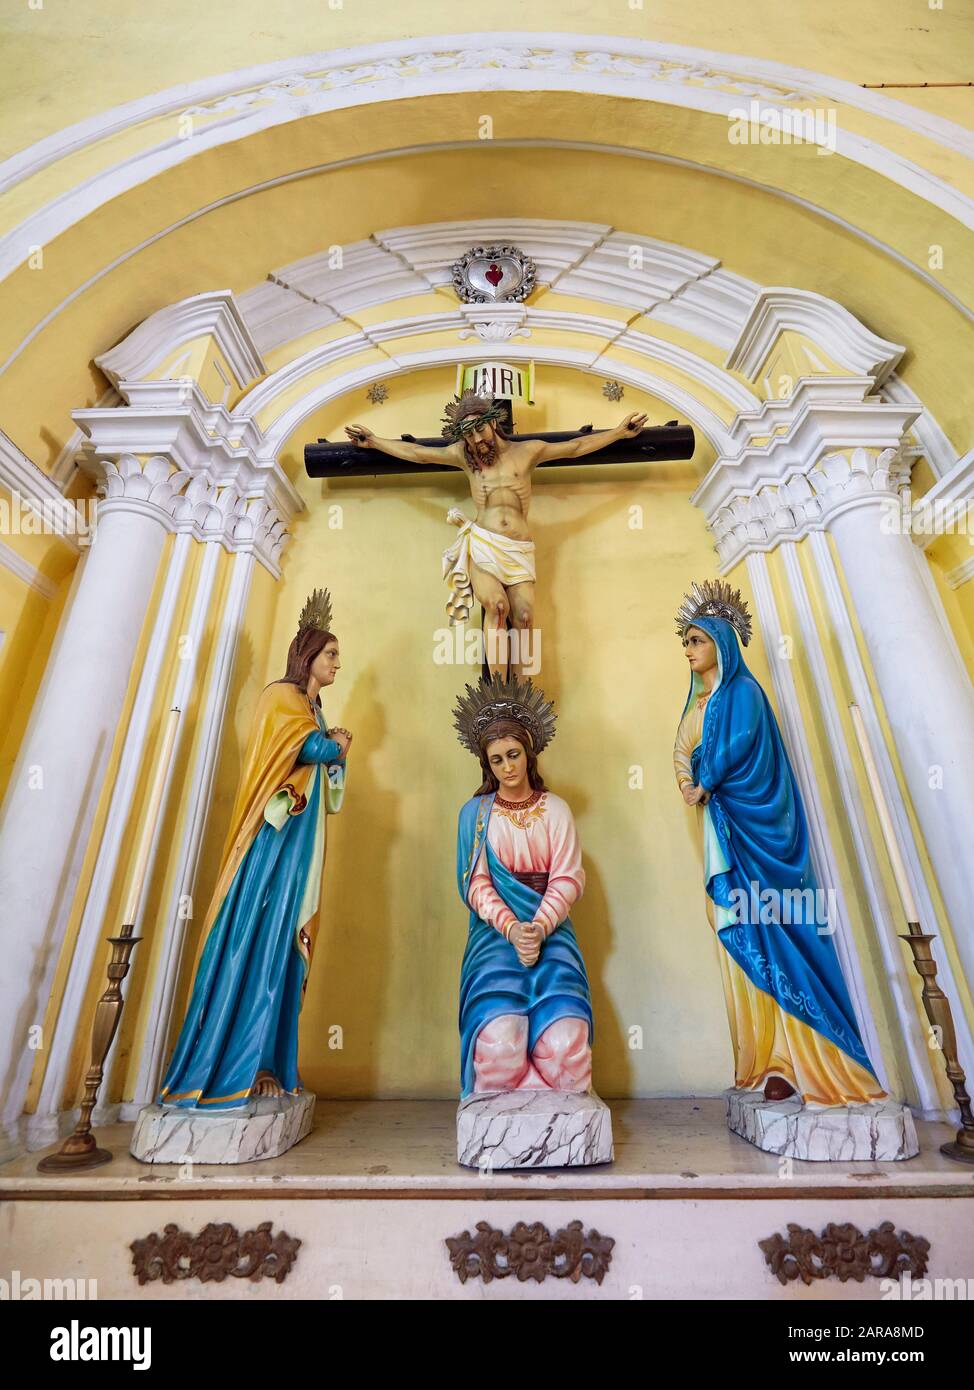 Frauen trauern um Kreuzigung Jesu, bildhauerische Gruppe in der Augustinuskirche, die 1591 von spanischen Augustiner-Priestern errichtet wurde. Macau, China. Stockfoto